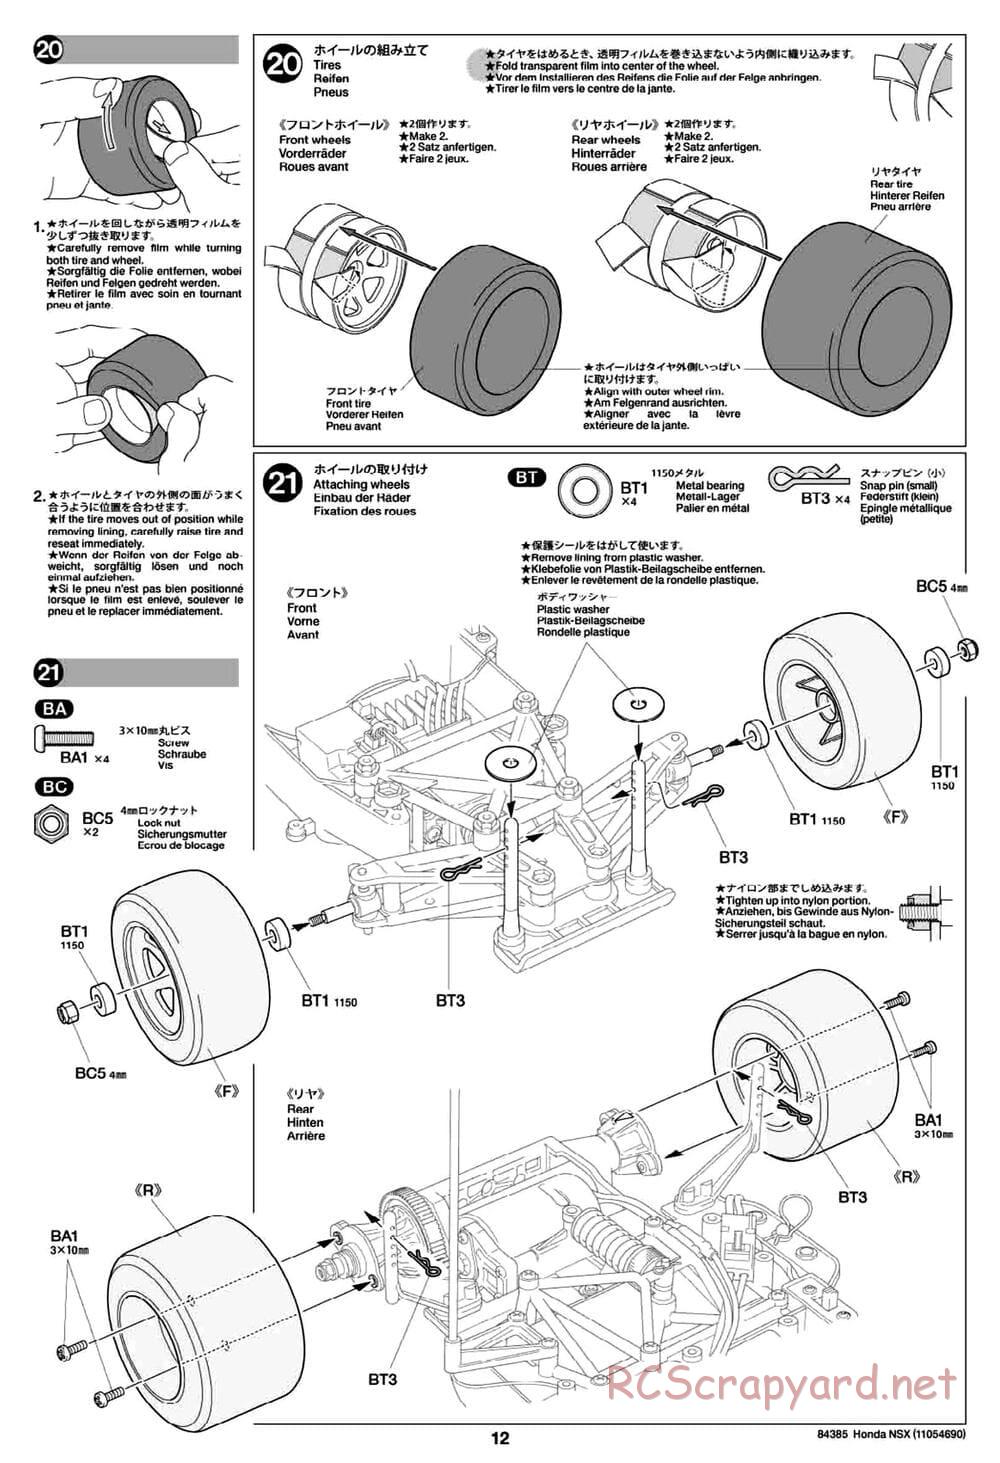 Tamiya - Honda NSX - Group-C Chassis - Manual - Page 12